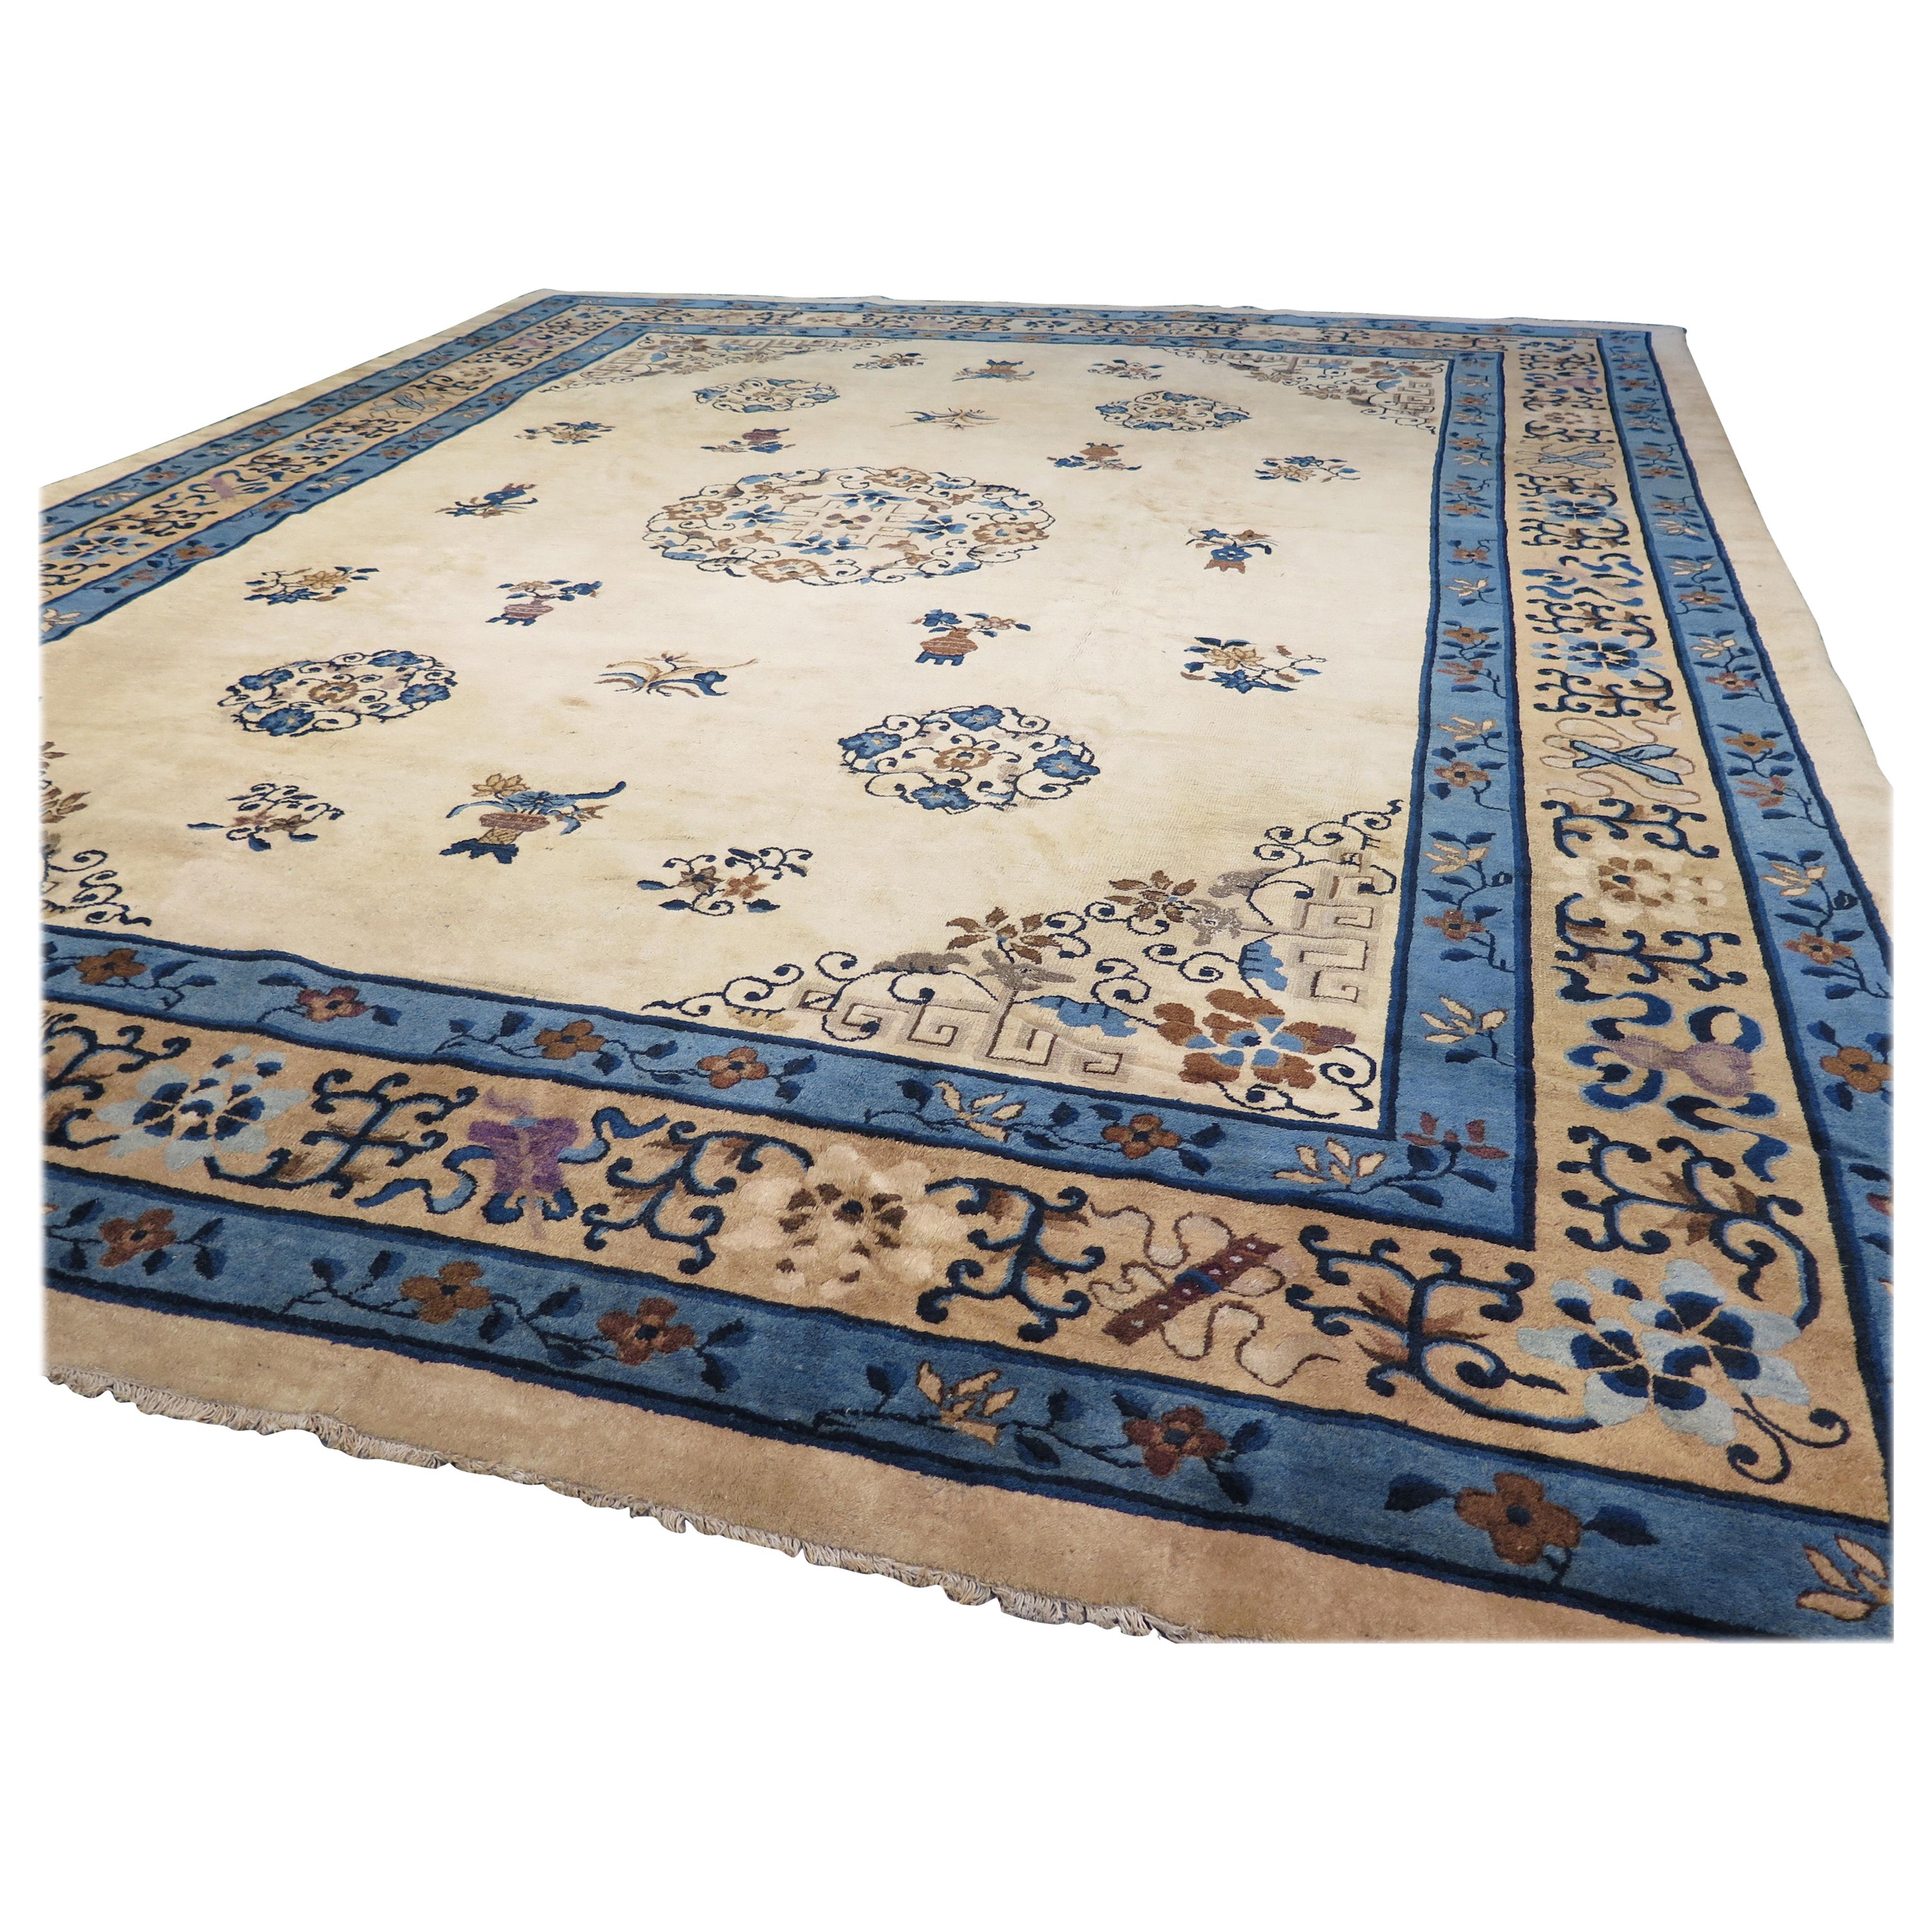 Elegant Antique Peking Carpet, c. 1900